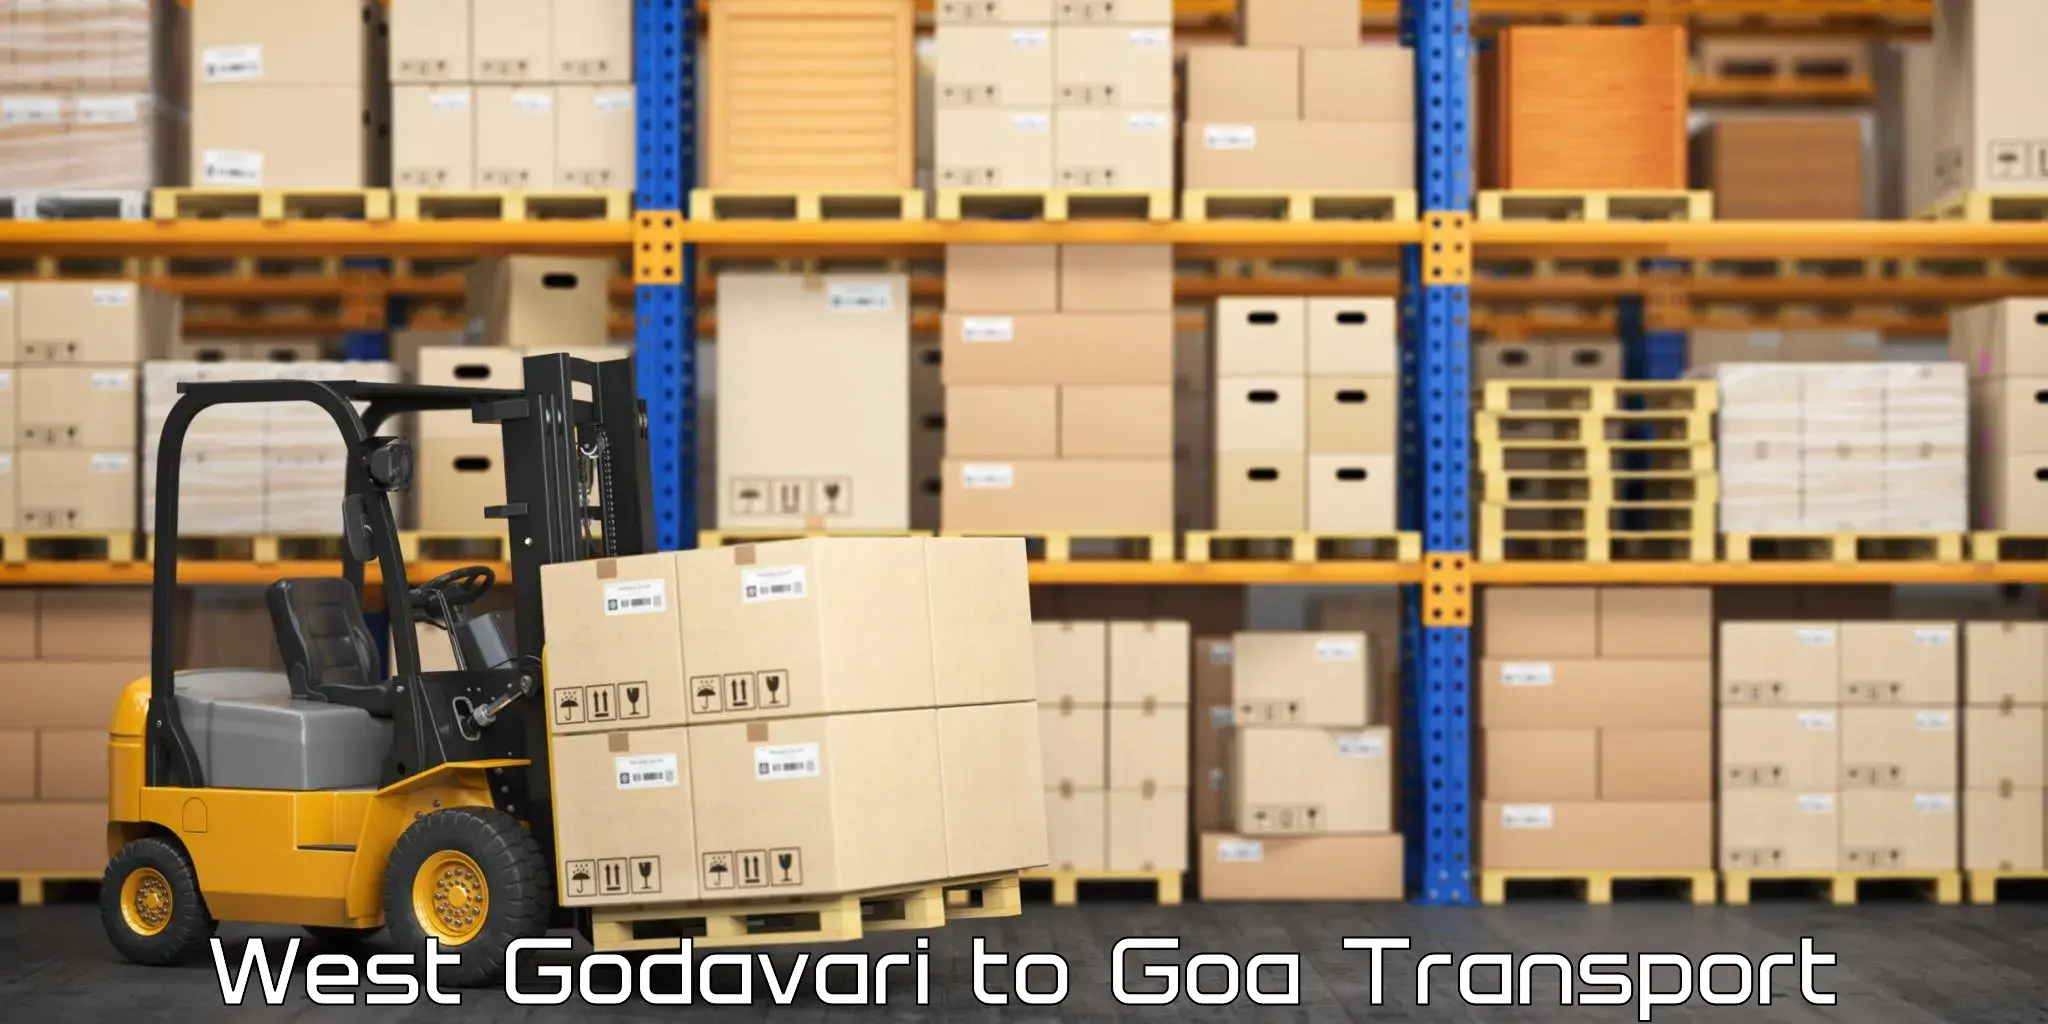 Commercial transport service West Godavari to Vasco da Gama